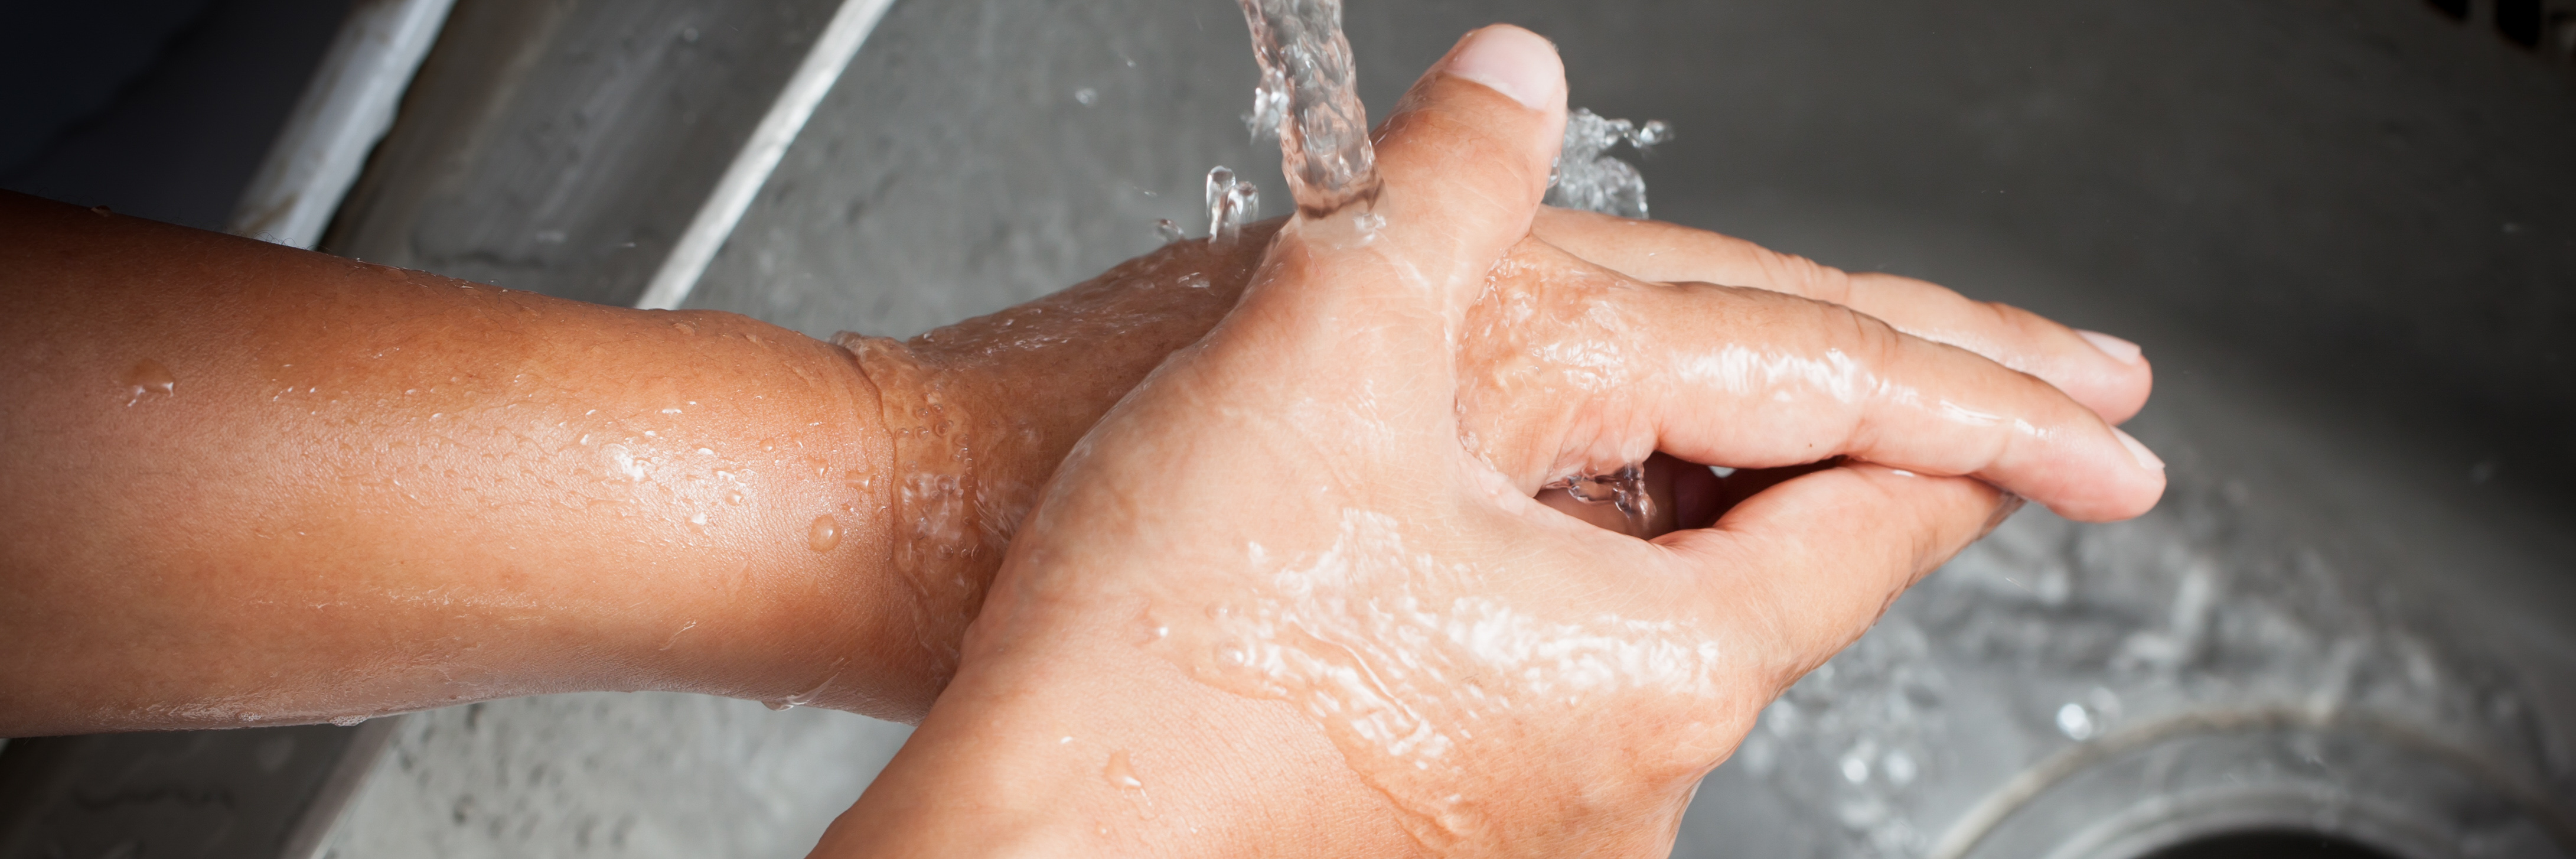 Auf dem Bild sieht man zwei Hände, die unter dem Strahl eines Wasserhahns gewaschen werden.